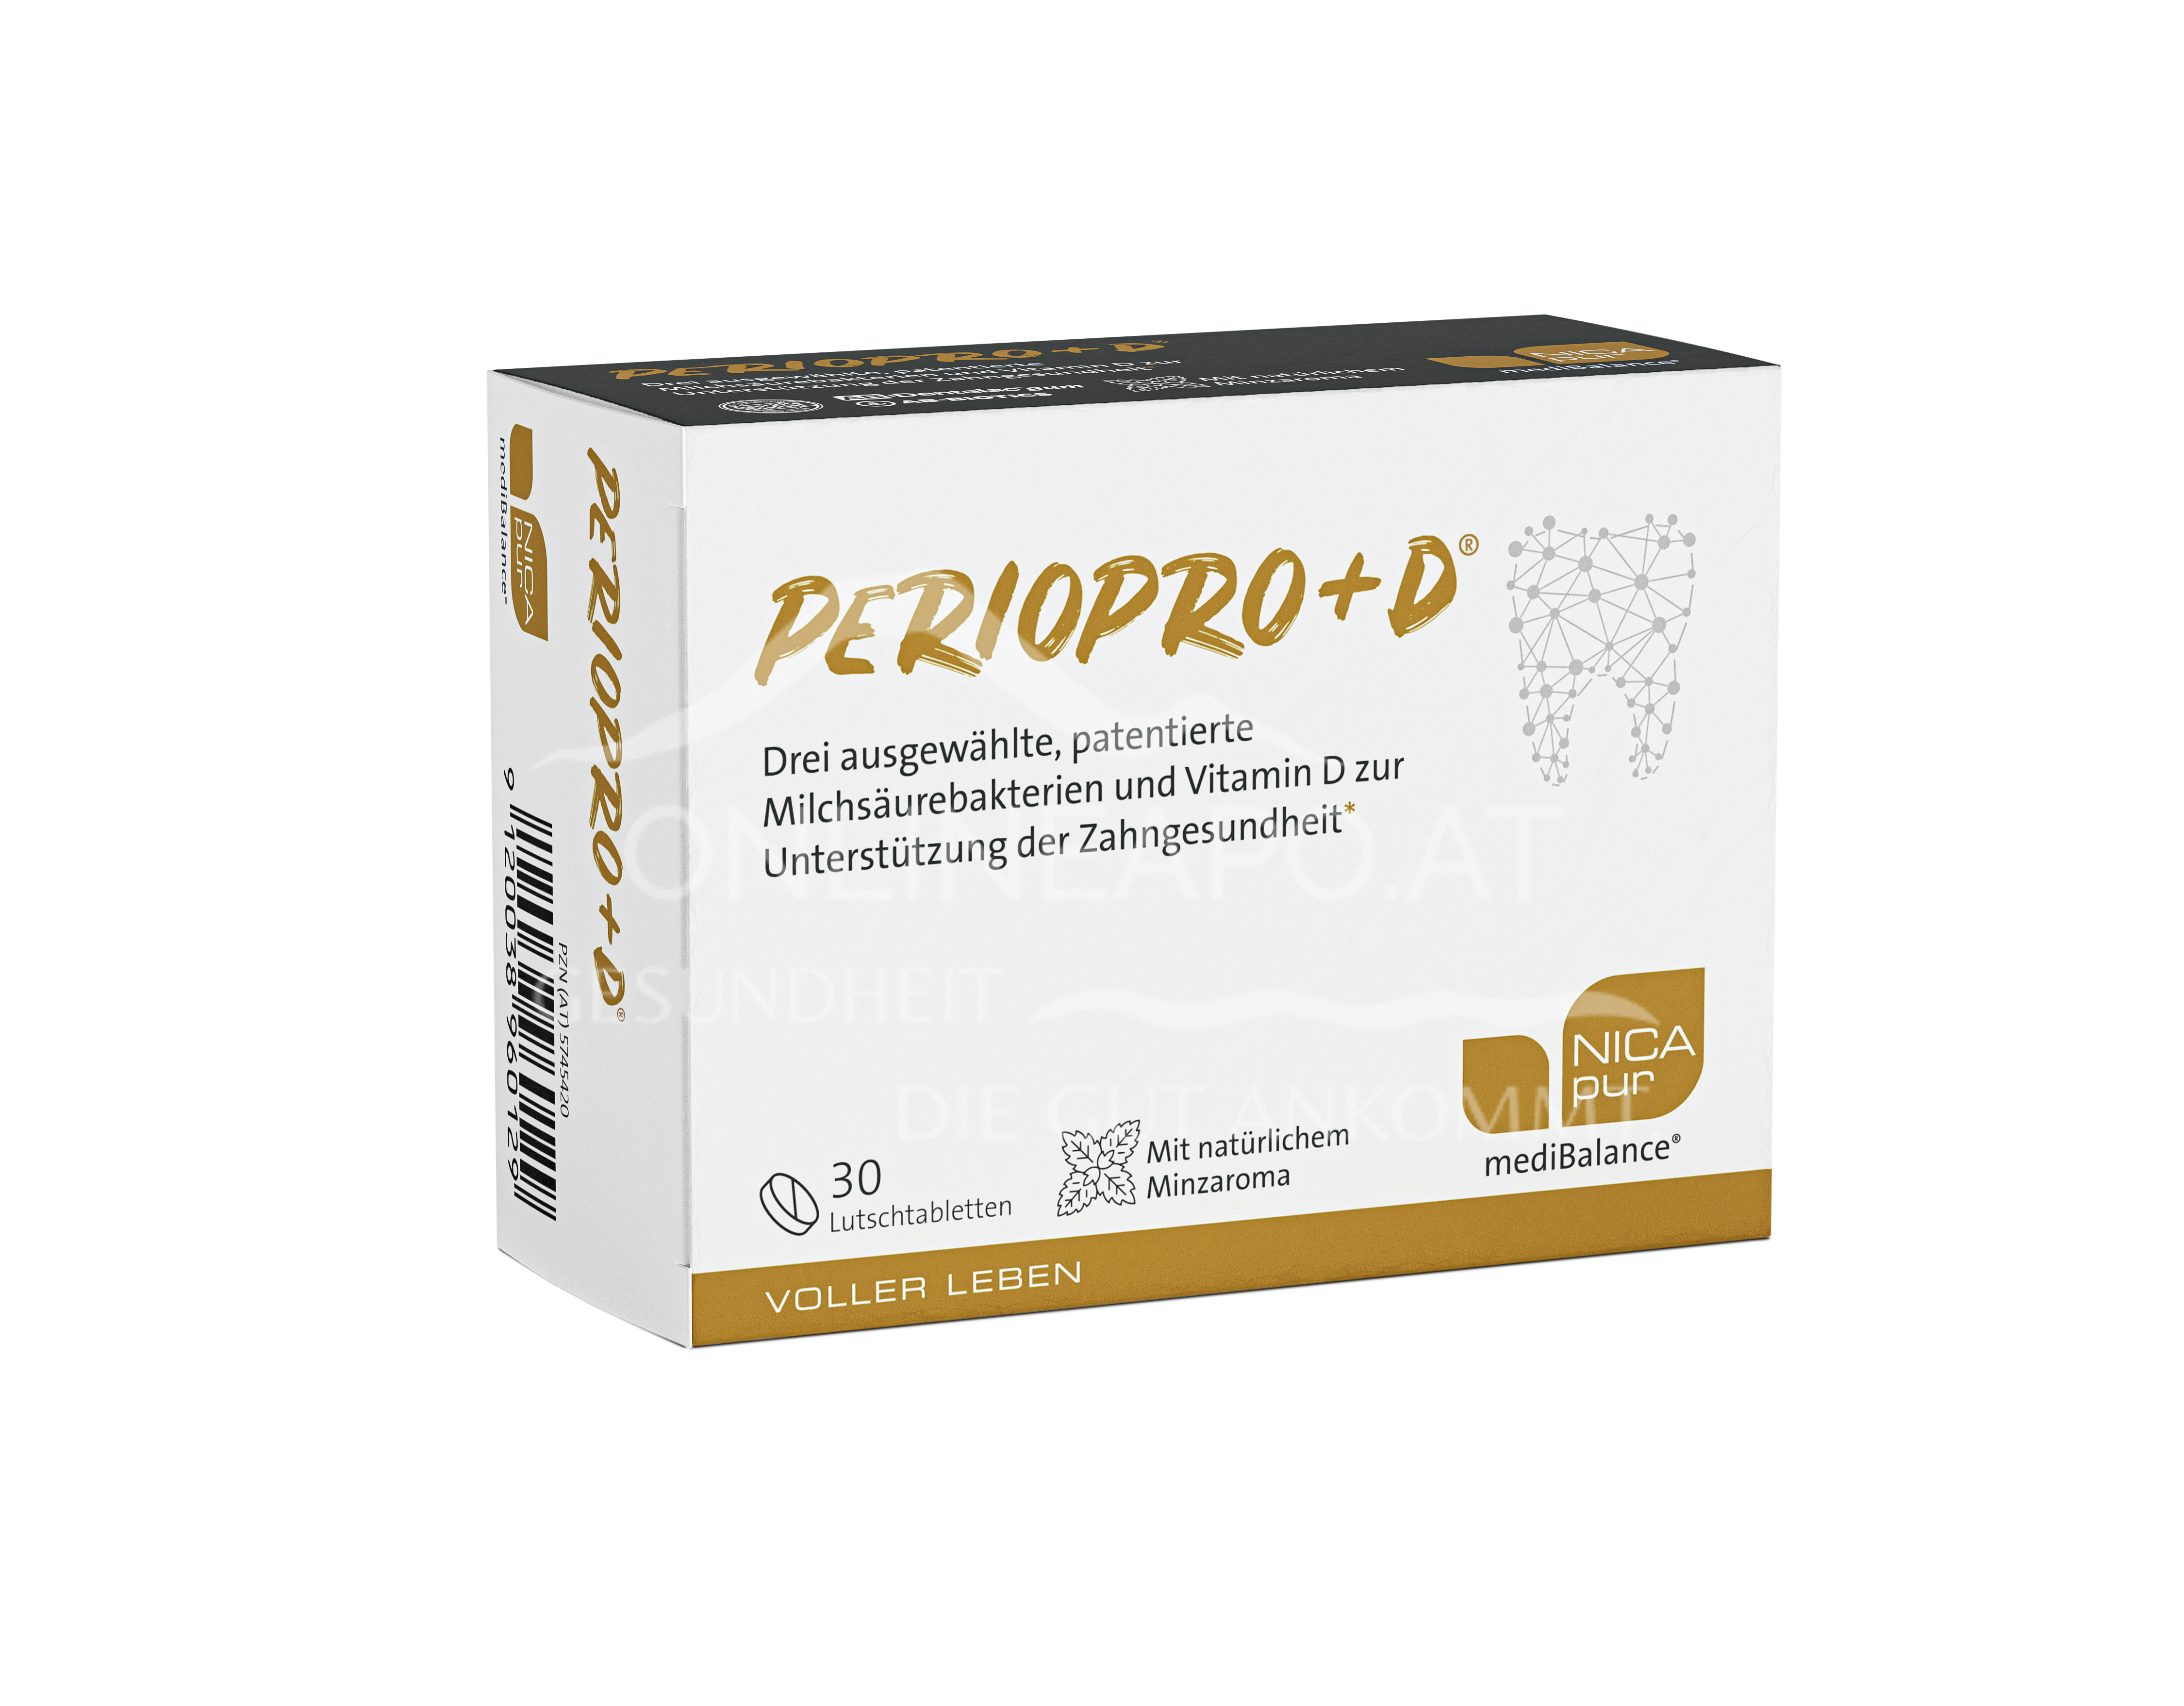 NICApur mediBalance® PerioPro+D® Lutschtabletten